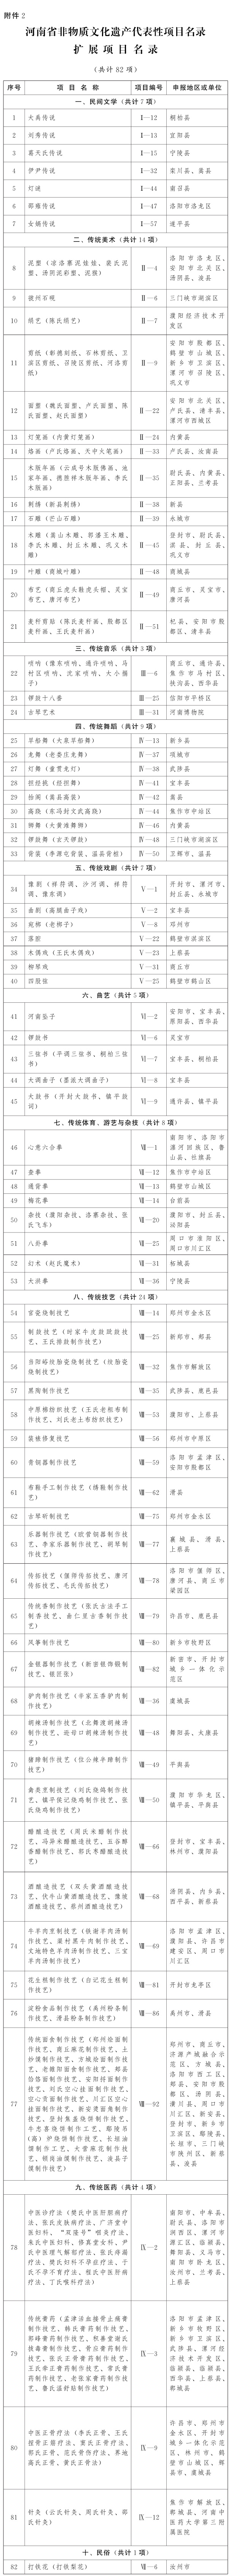 河南省人民政府关于公布第五批河南省非物质文化遗产代表性项目名录的通知